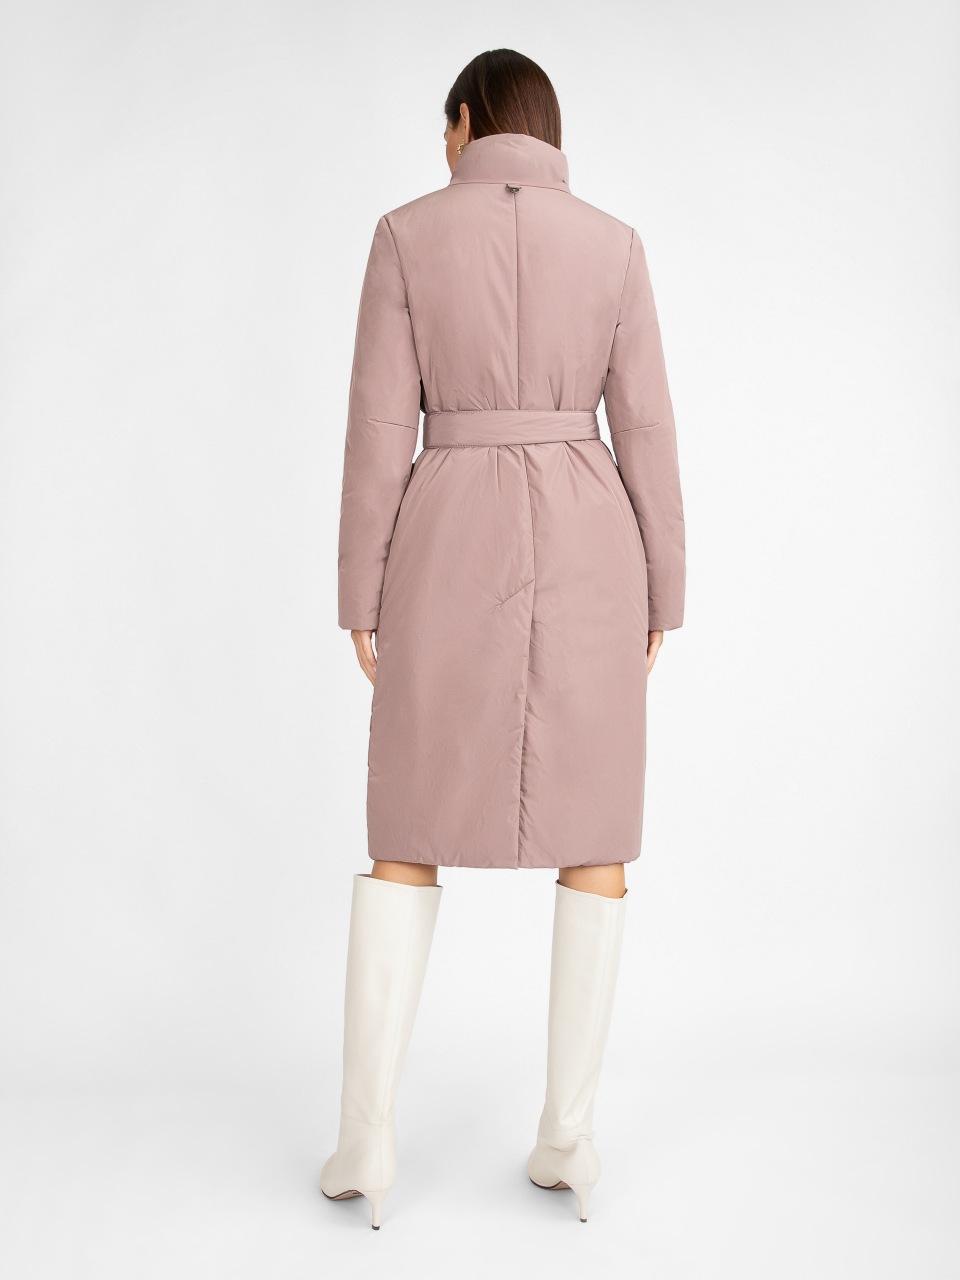 Пальто женское ElectraStyle 5У-2111-112 розовое 52 RU